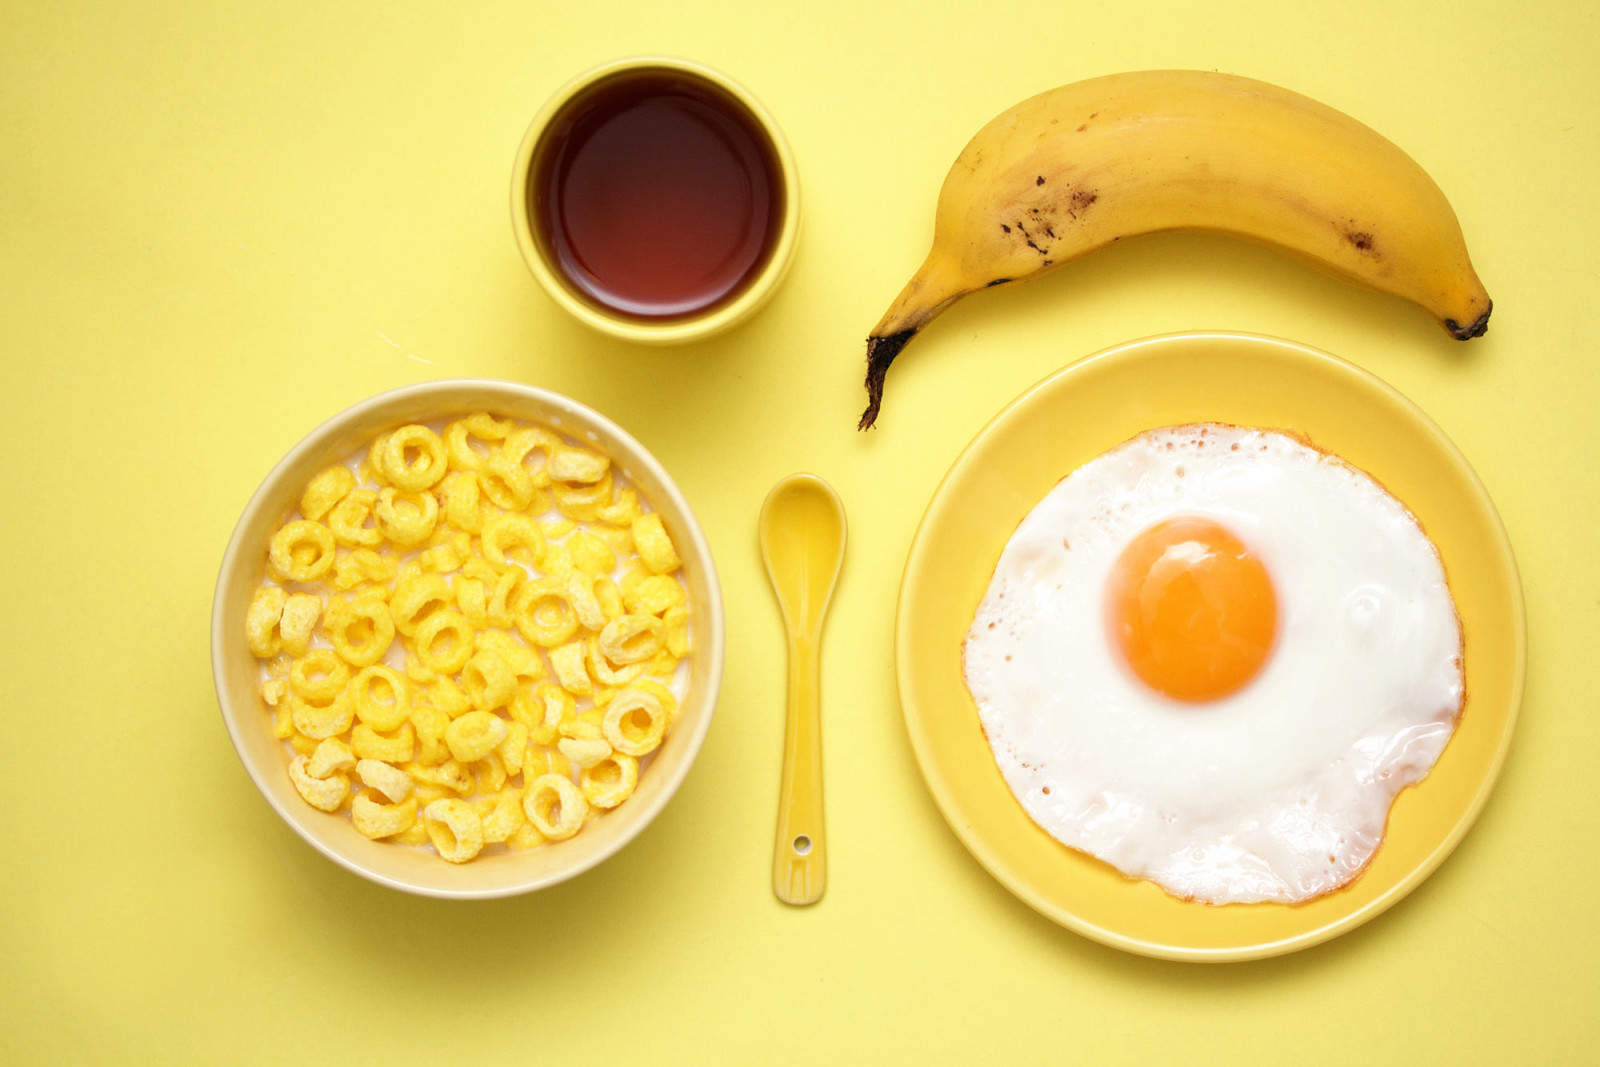 อาหารเช้า, ไข่, เมล็ดธัญพืช, กล้วย, อาหารเช้าสีเหลือง